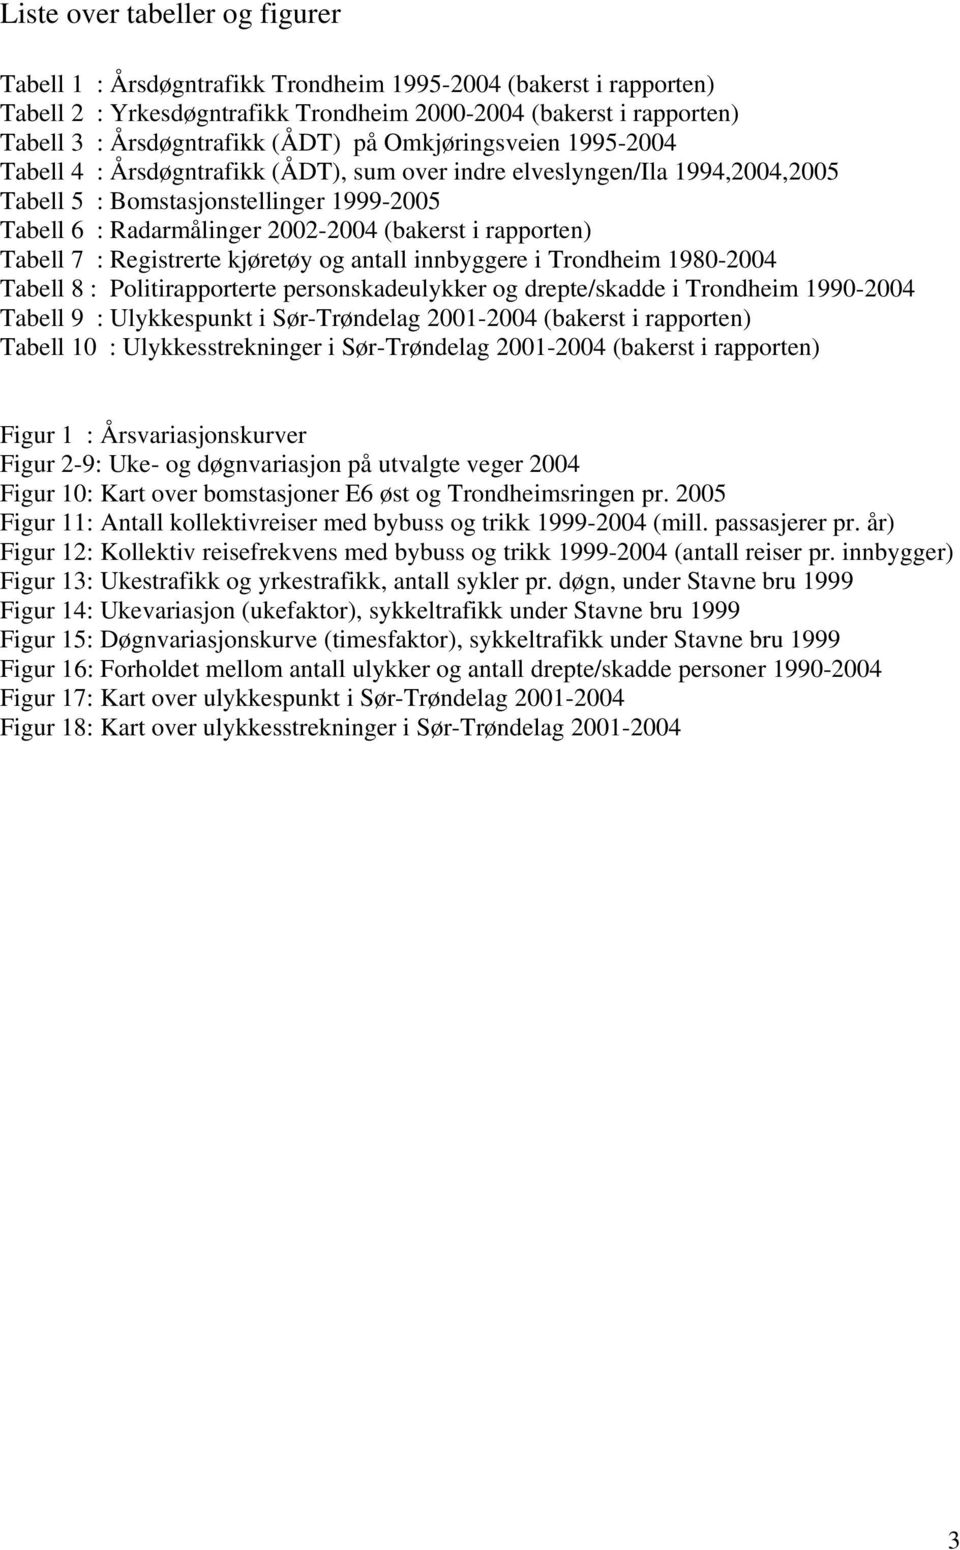 i rapporten) Tabell 7 : Registrerte kjøretøy og antall innbyggere i Trondheim 1980-2004 Tabell 8 : Politirapporterte personskadeulykker og drepte/skadde i Trondheim 1990-2004 Tabell 9 : Ulykkespunkt